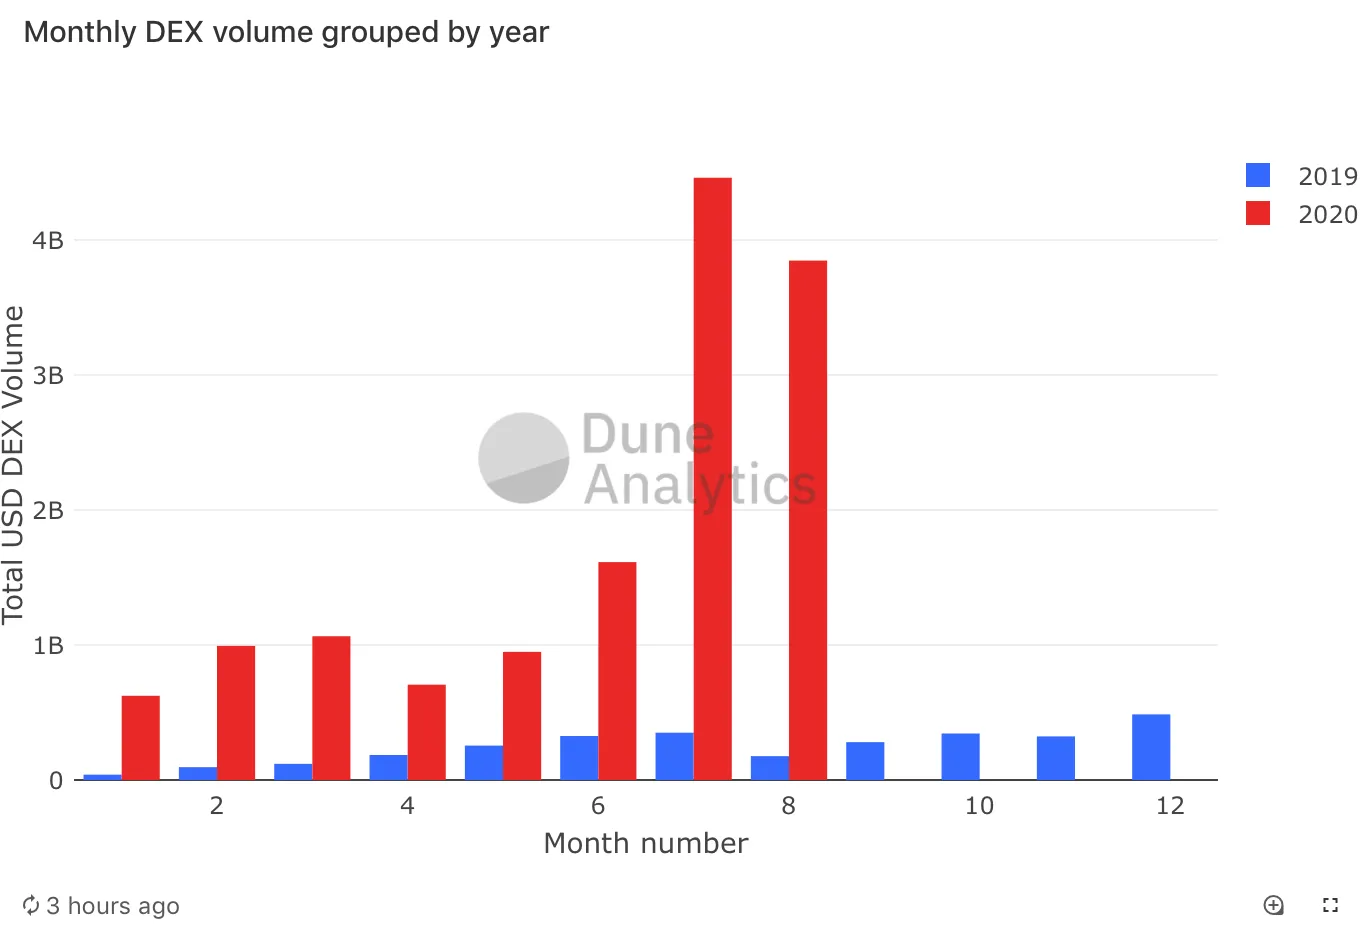 Los volúmenes de comercio DEX para 2020 superan con creces los de 2019. Imagen: Dune Analytics.